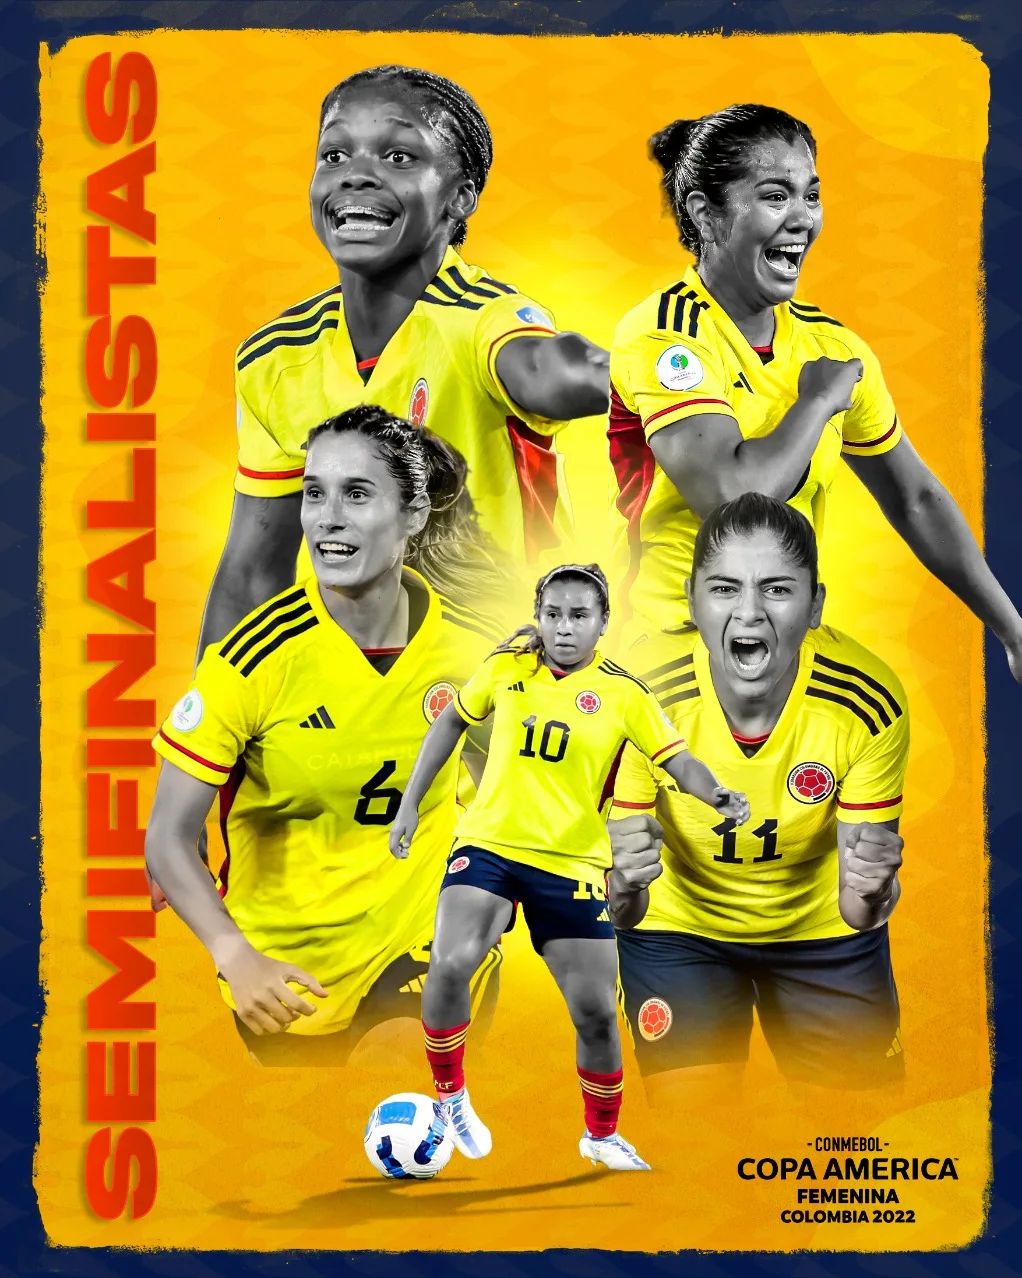 Este lunes, 7:00 p.m. el reto para la plaza de #Bucaramanga superar las asistencias de #Cali y #Armenia: #Colombia vs. #Argentina, primera semifinal.

#Futbol #FutbolFemenino #CopaAmerica #copaamericafemenina